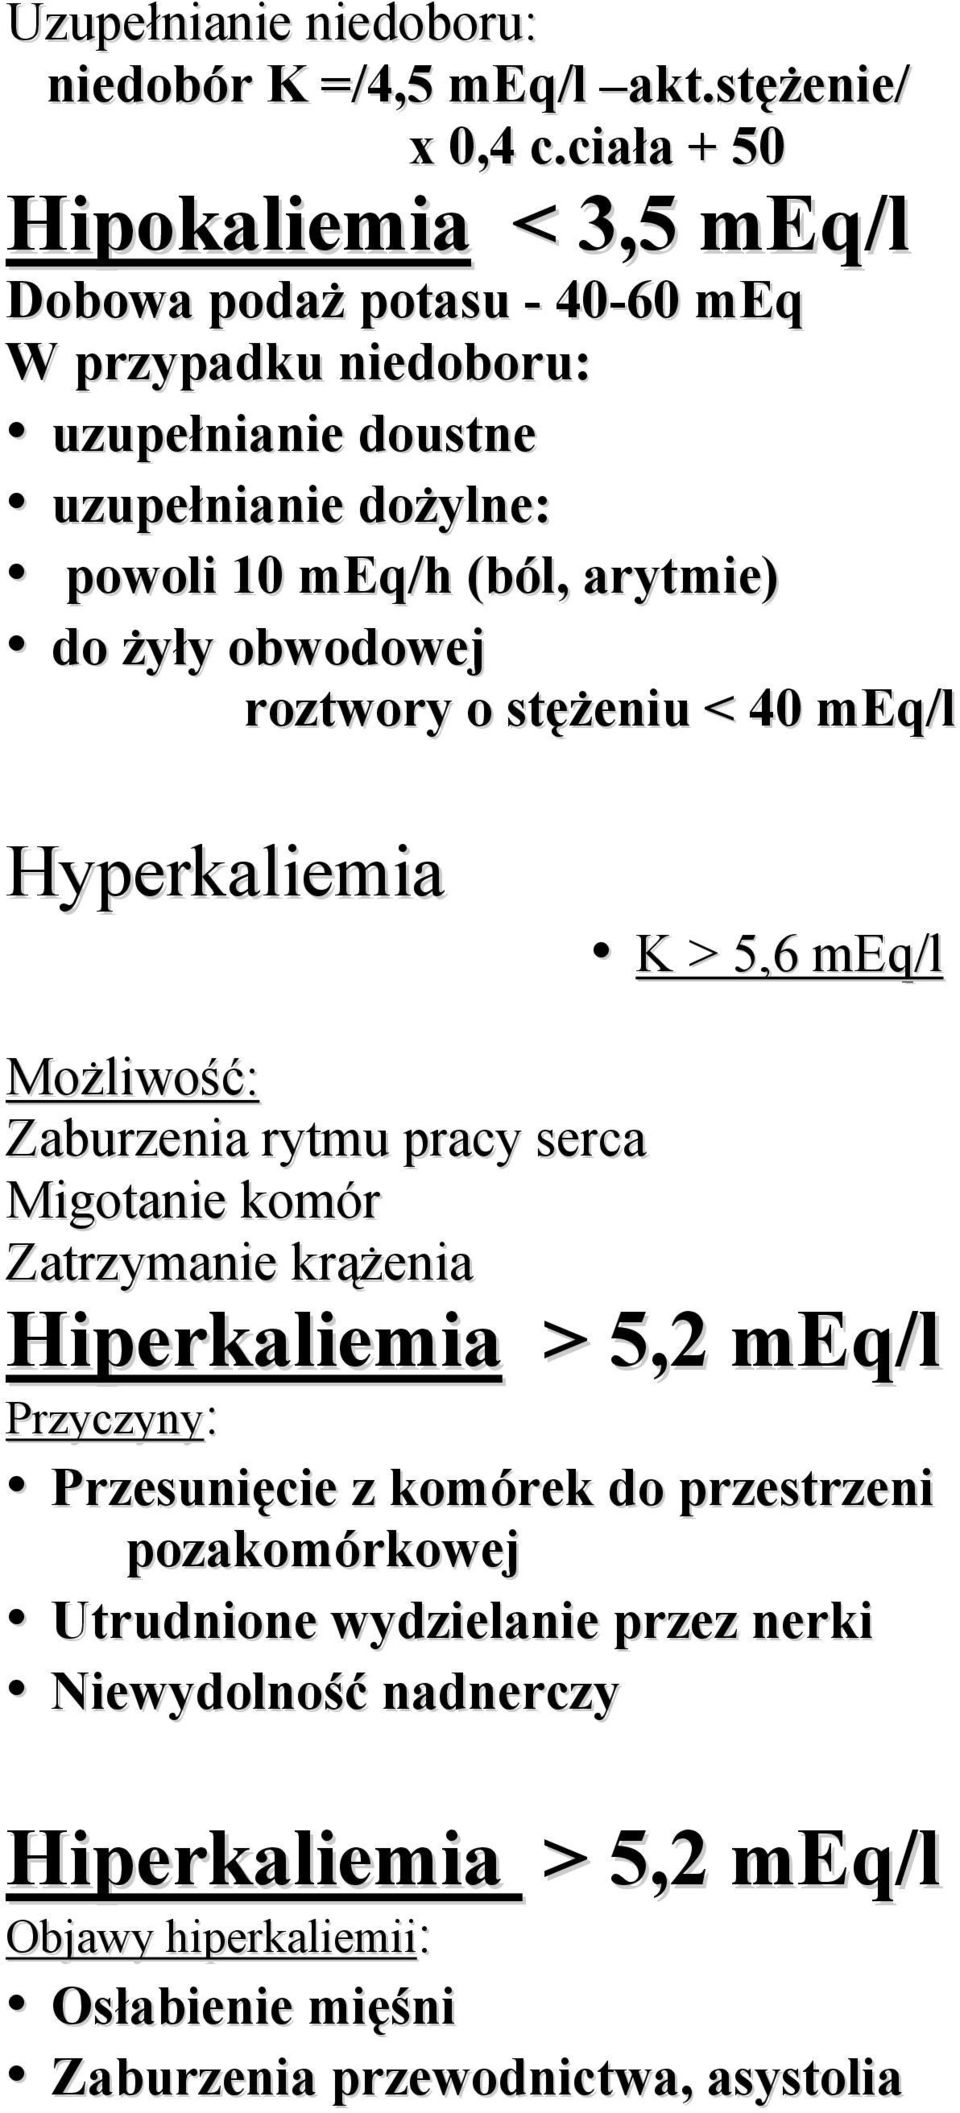 arytmie) do żyły obwodowej roztwory o stężeniu < 40 meq/l Hyperkaliemia K > 5,6 meq/l Możliwość: Zaburzenia rytmu pracy serca Migotanie komór Zatrzymanie